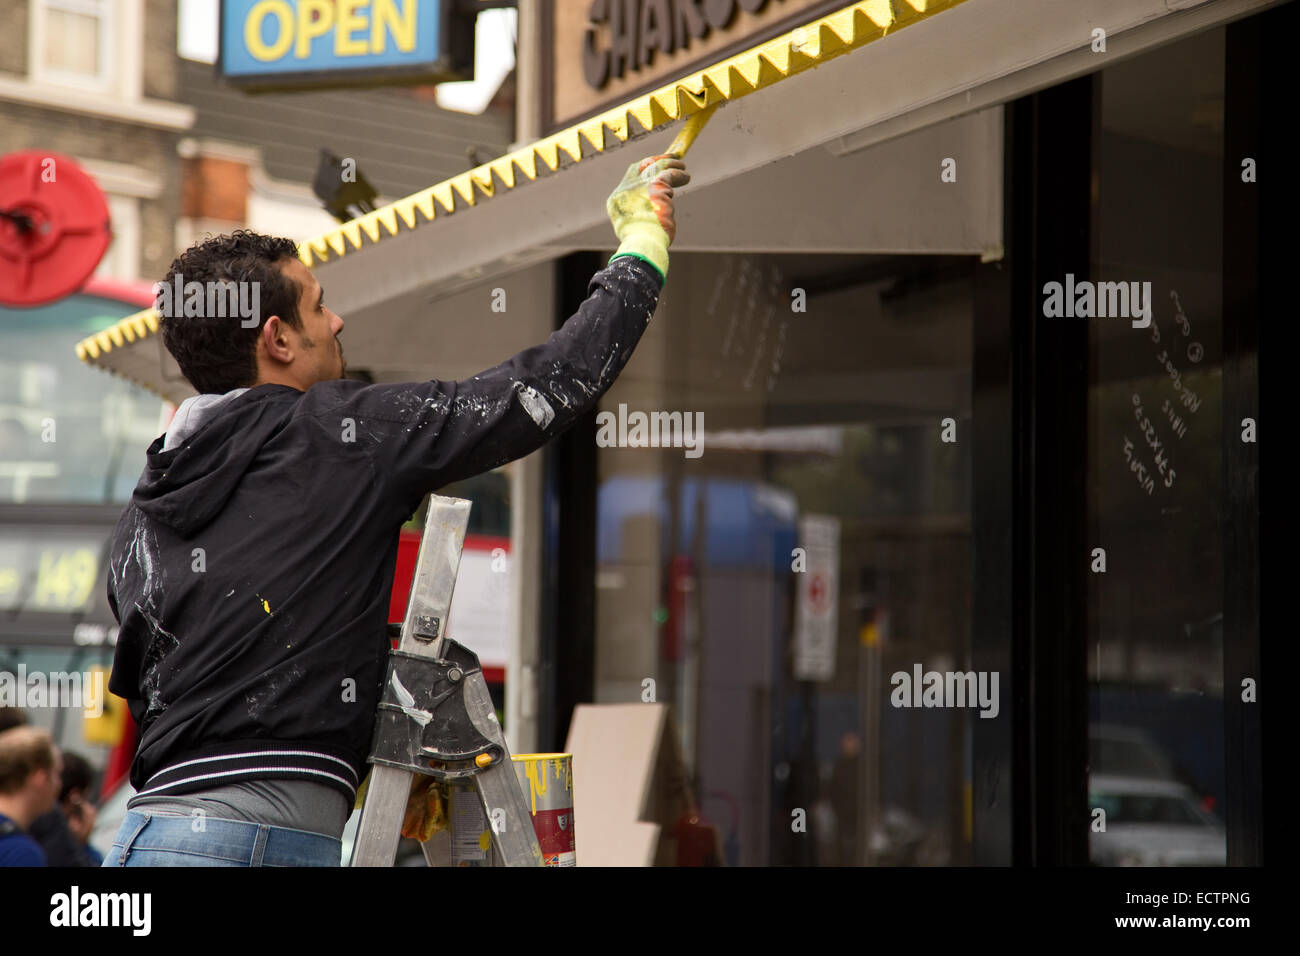 LONDON - 25. NOVEMBER: Unidentifies Handwerker malen das äußere eines Ladens am 25. November 2014, in London, England, UK Stockfoto